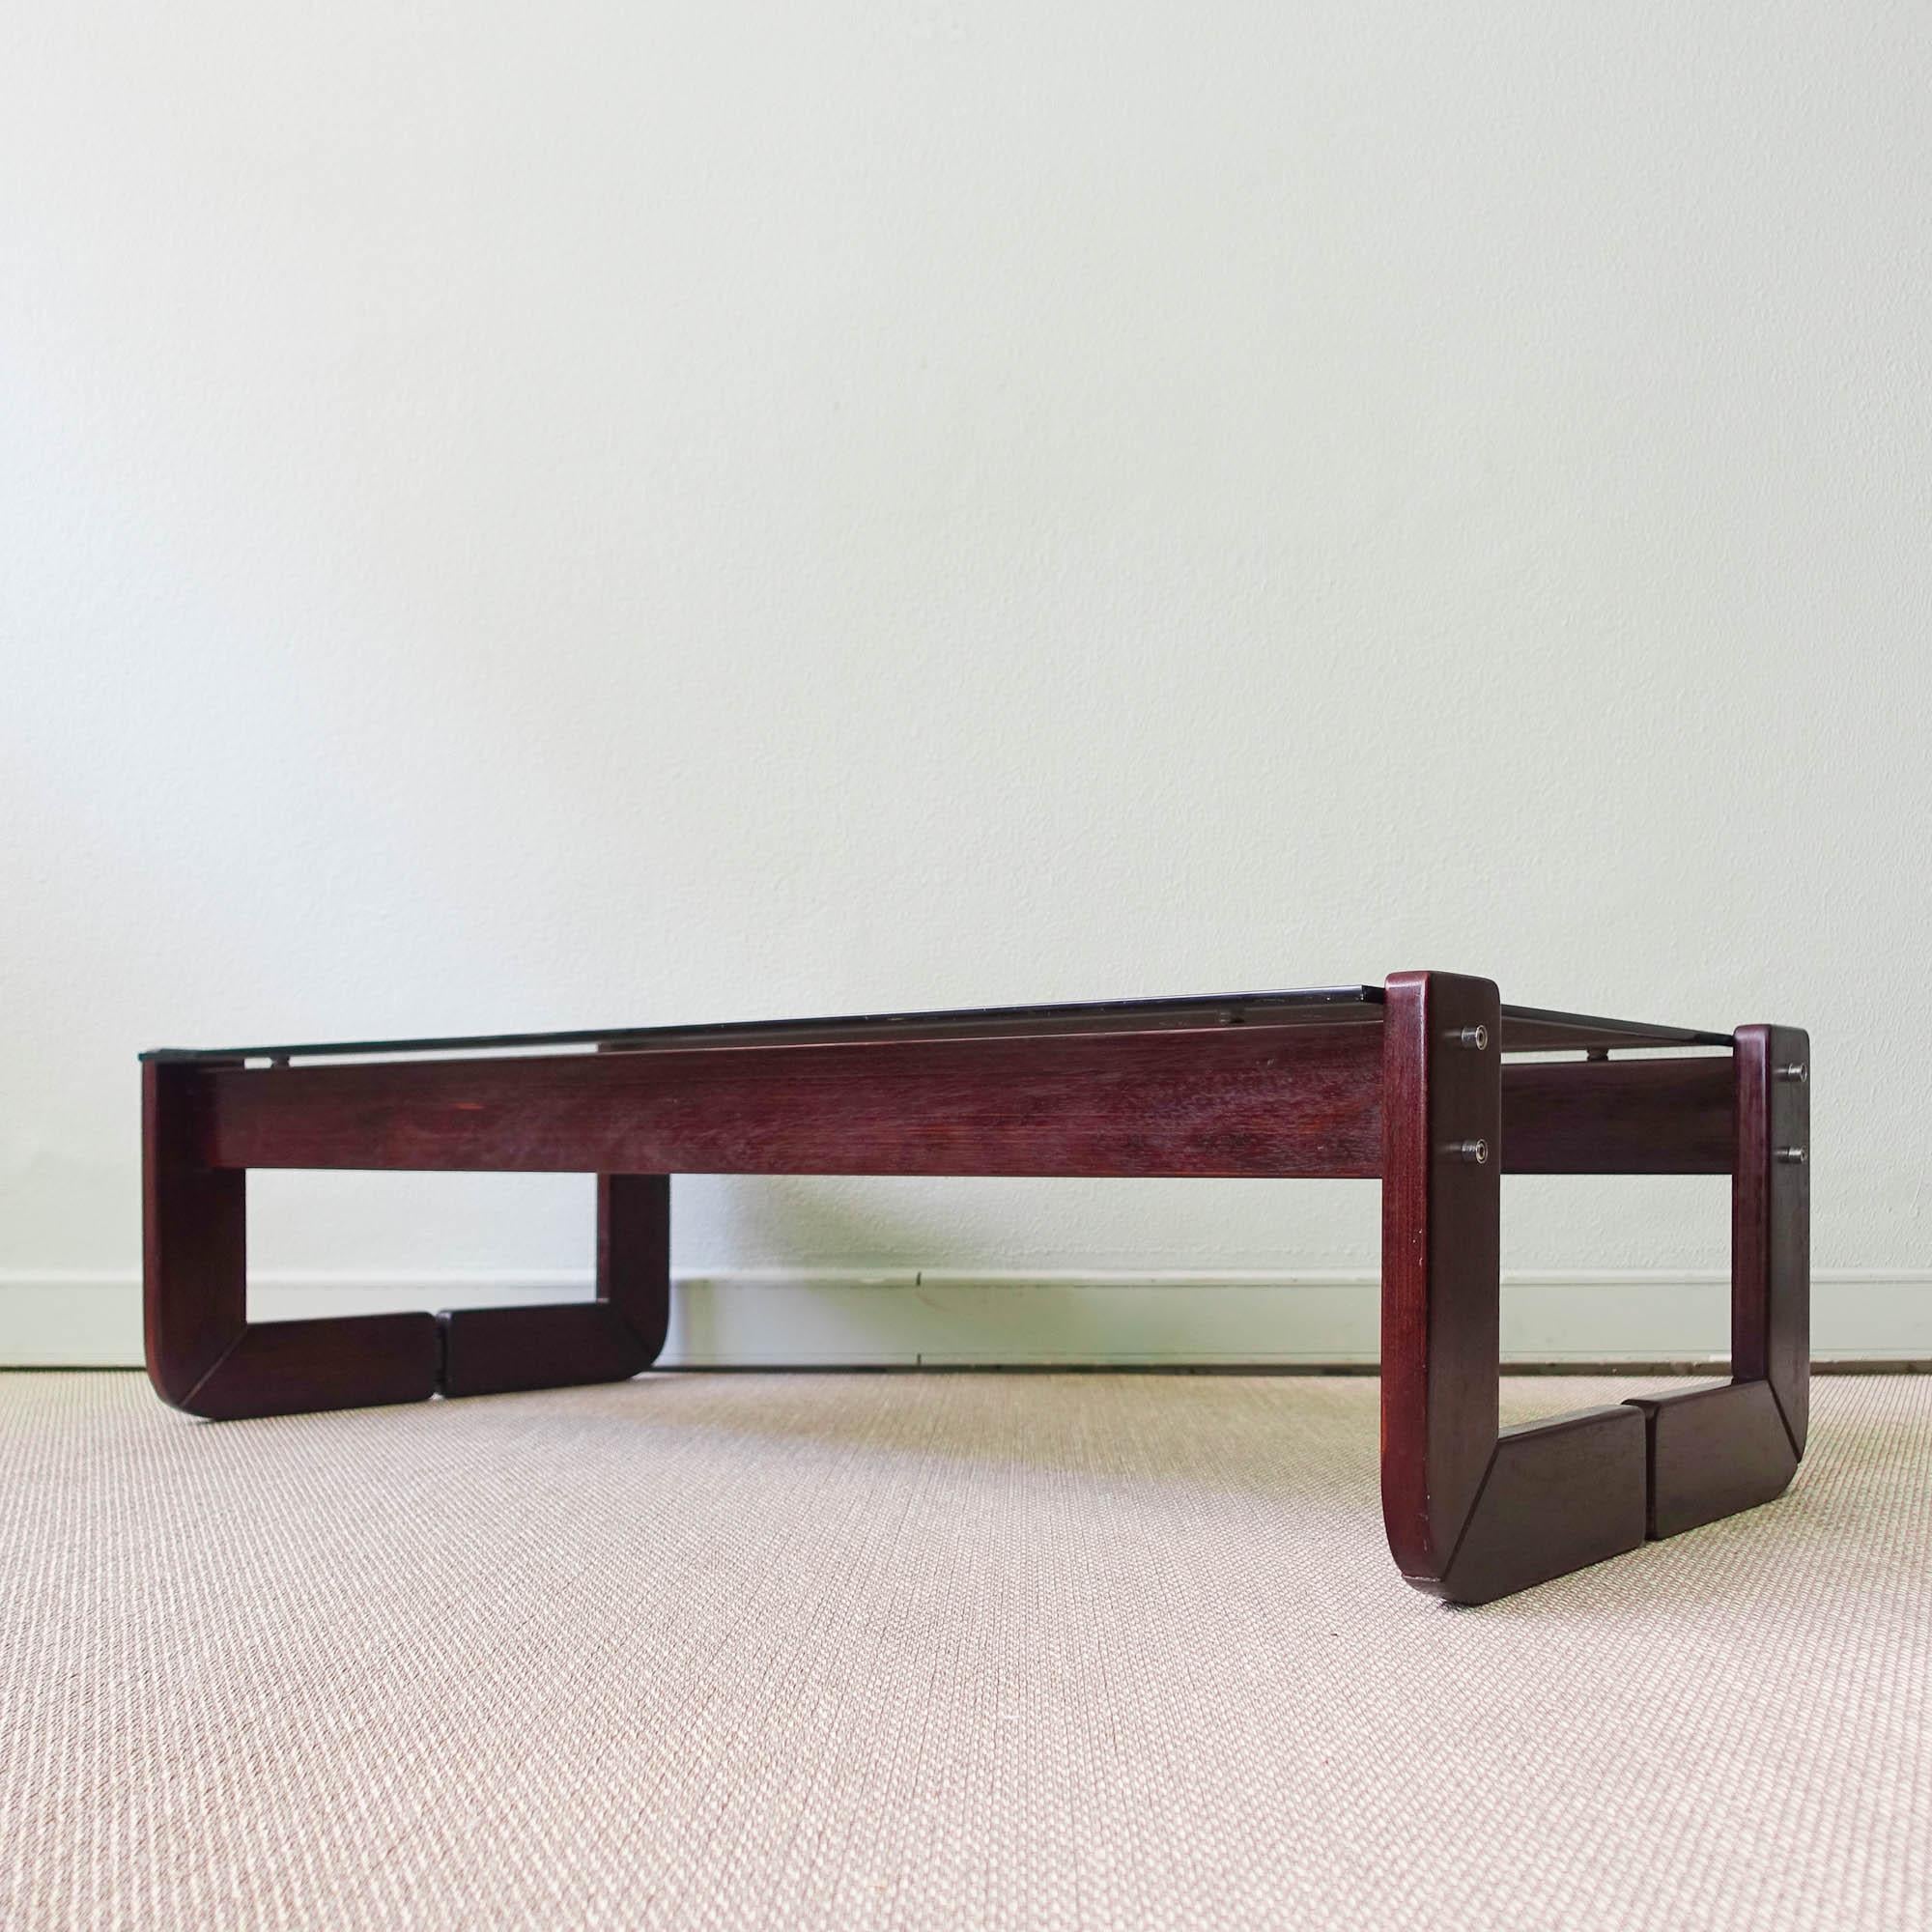 Cette table basse, modèle MP 97, a été conçue et produite par Percival Lafer, au Brésil, dans les années 1970. Il présente une structure simple en bois exotique massif et un plateau en verre fumé. En bon état original et vintage, avec seulement une